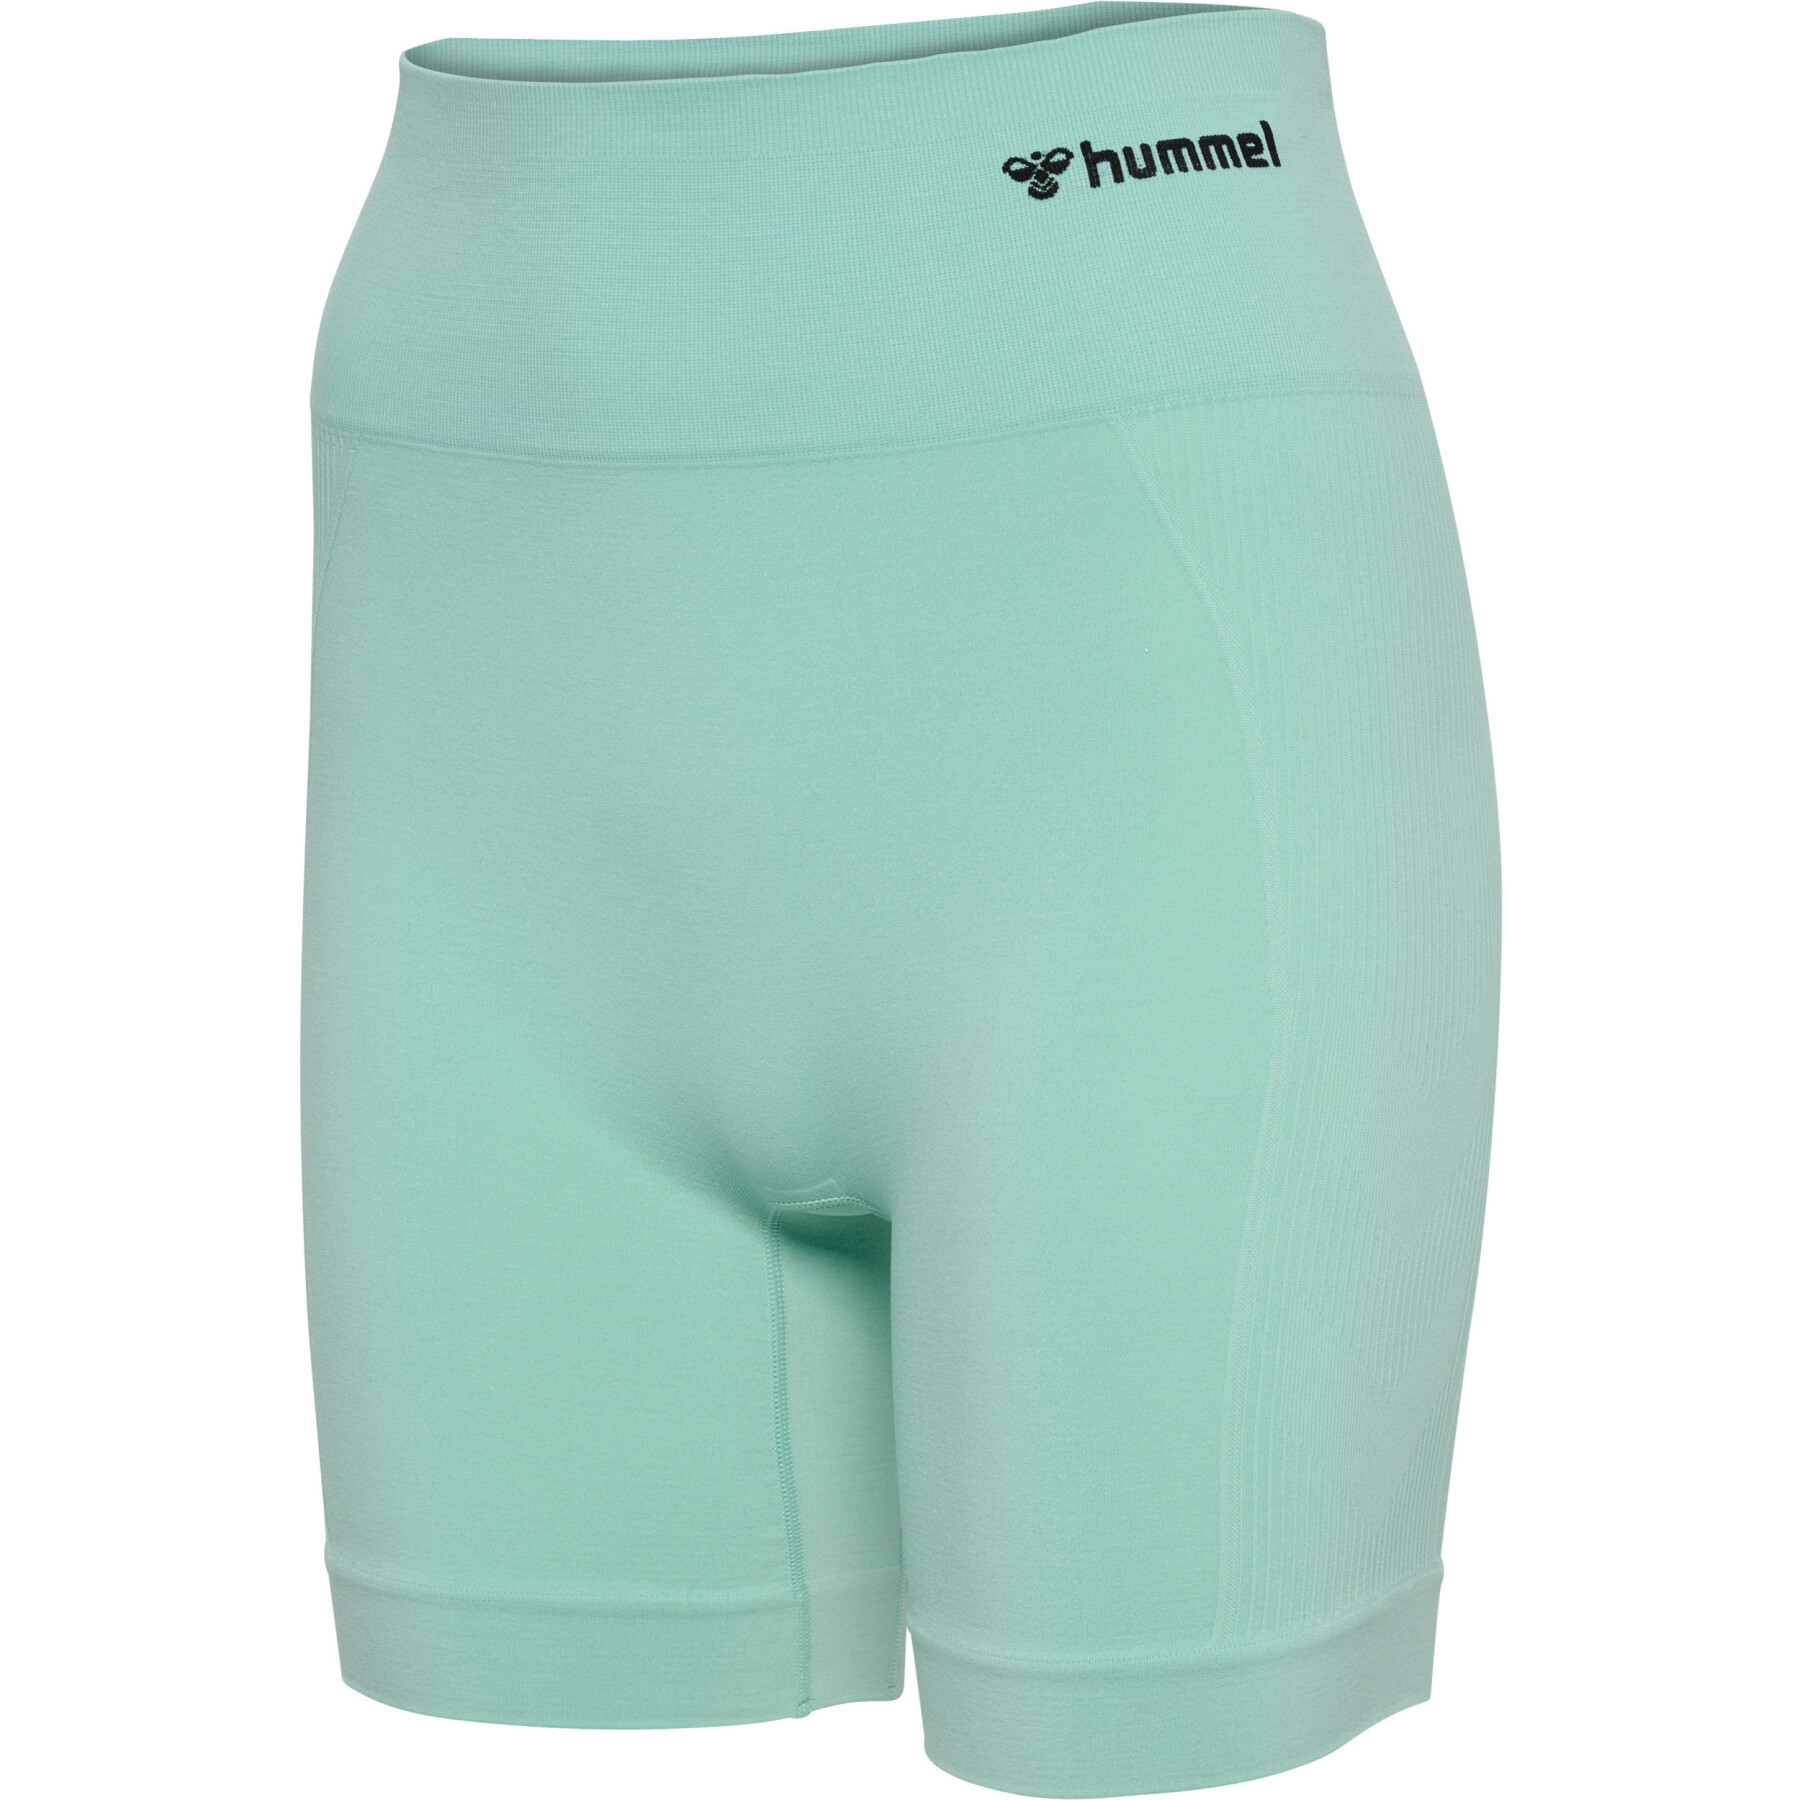 Shorts sin costuras para mujer Hummel Tif